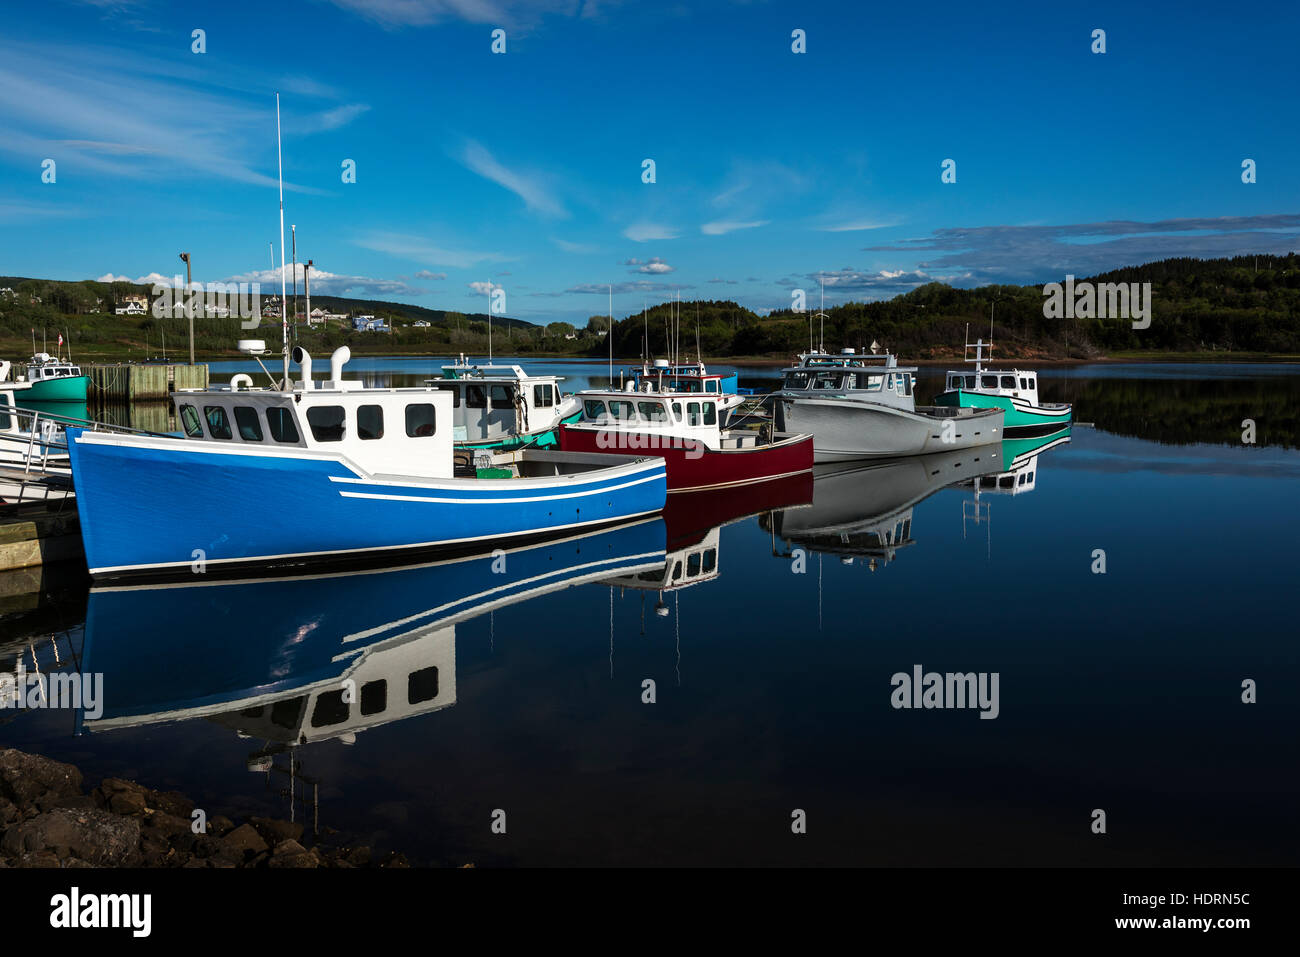 Fishing boats in Inverness Harbour; Cape Breton, Nova Scotia, Canada Stock Photo